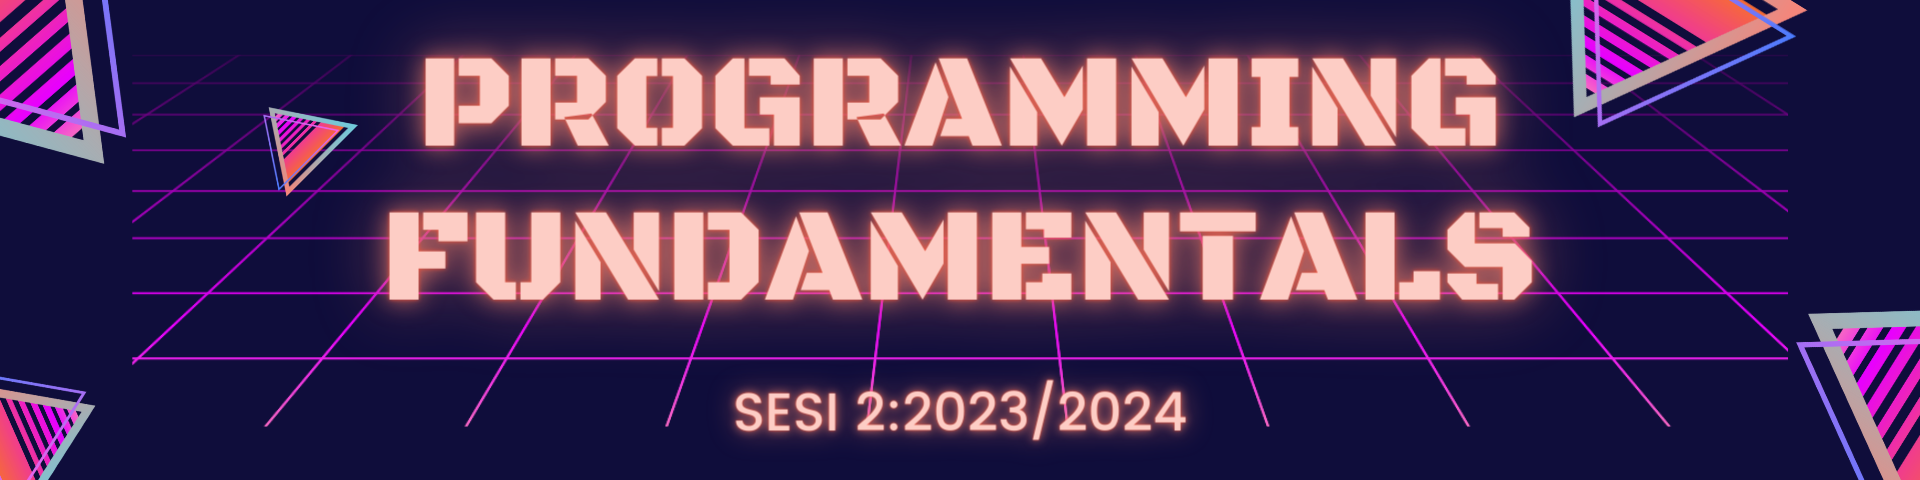 DEC20012 Programming Fundamentals